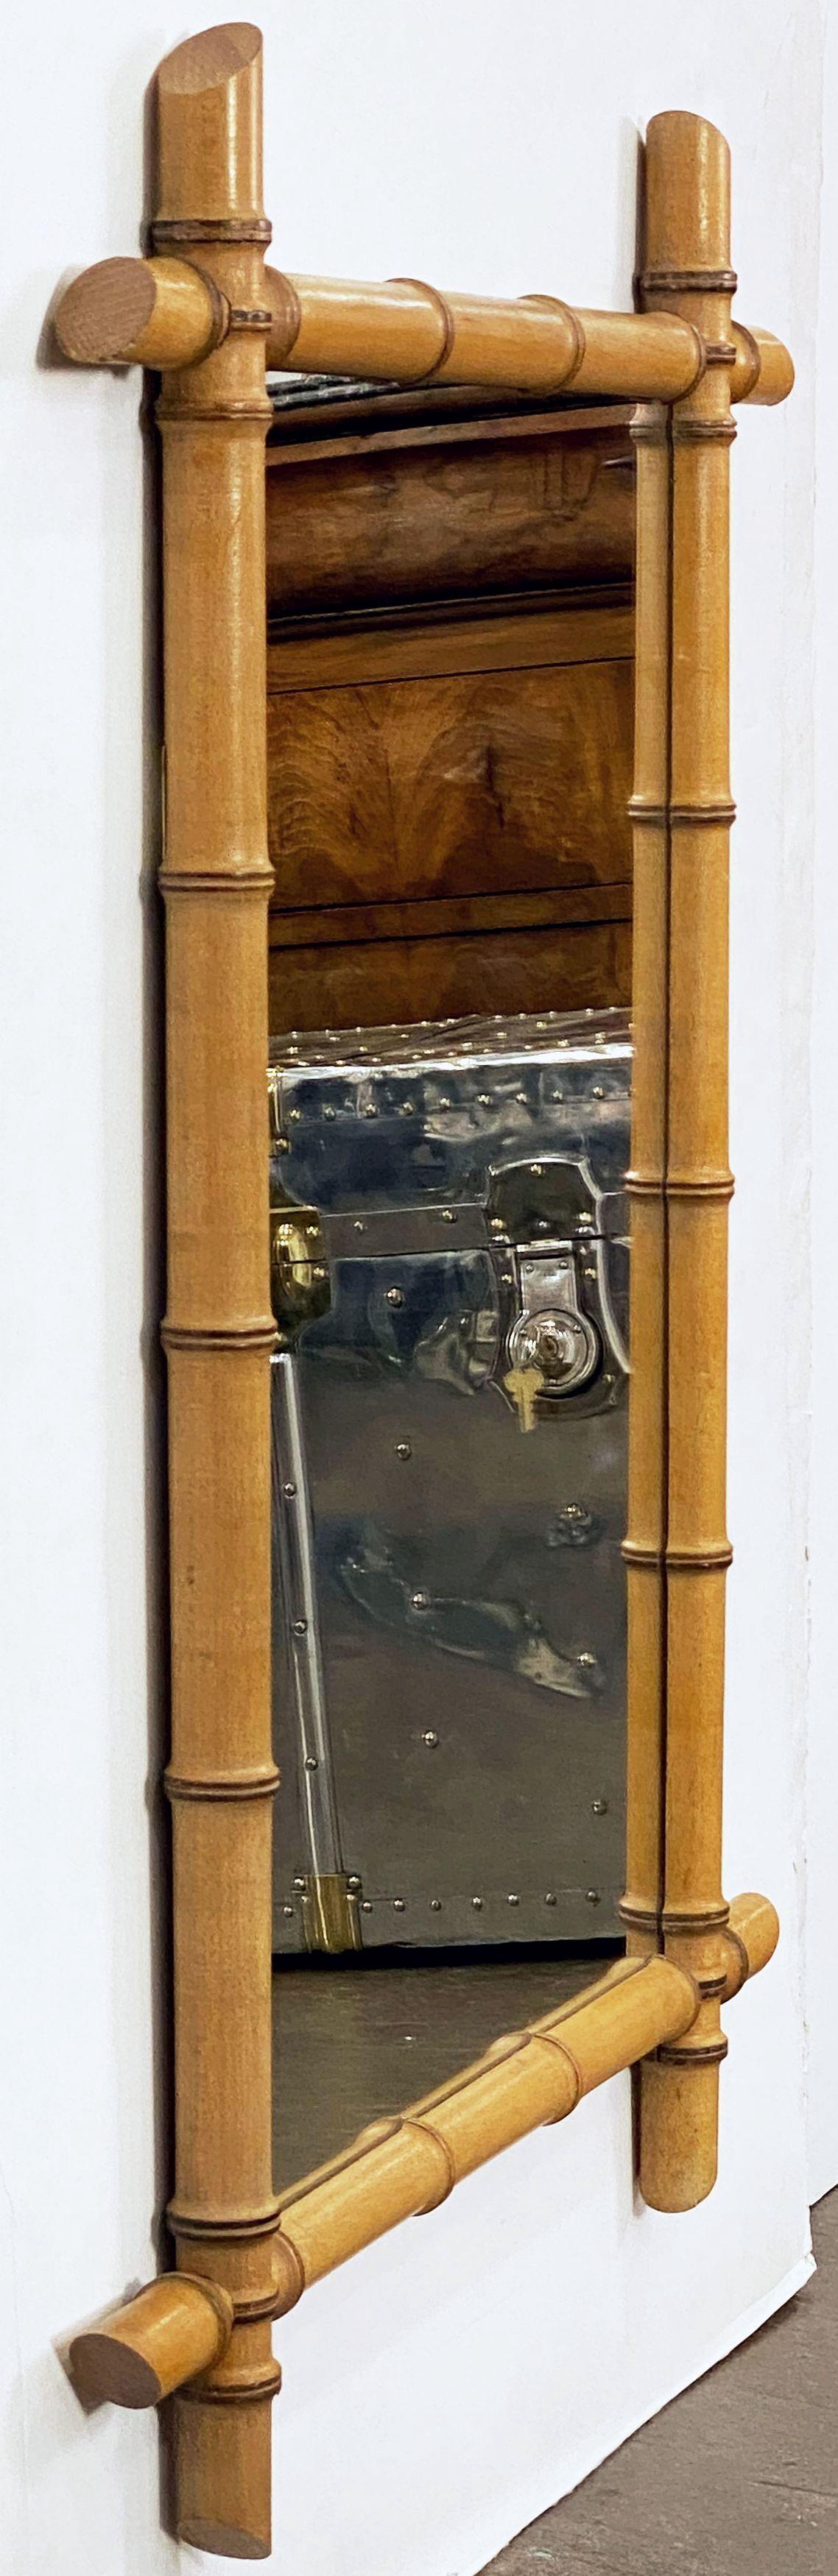 Un grand miroir rectangulaire français en faux bambou du début du 20e siècle, avec un cadre rectangulaire en faux bambou tourné avec des coins entrecroisés entourant une plaque de miroir centrale. 
Peut être affiché verticalement (portrait) ou